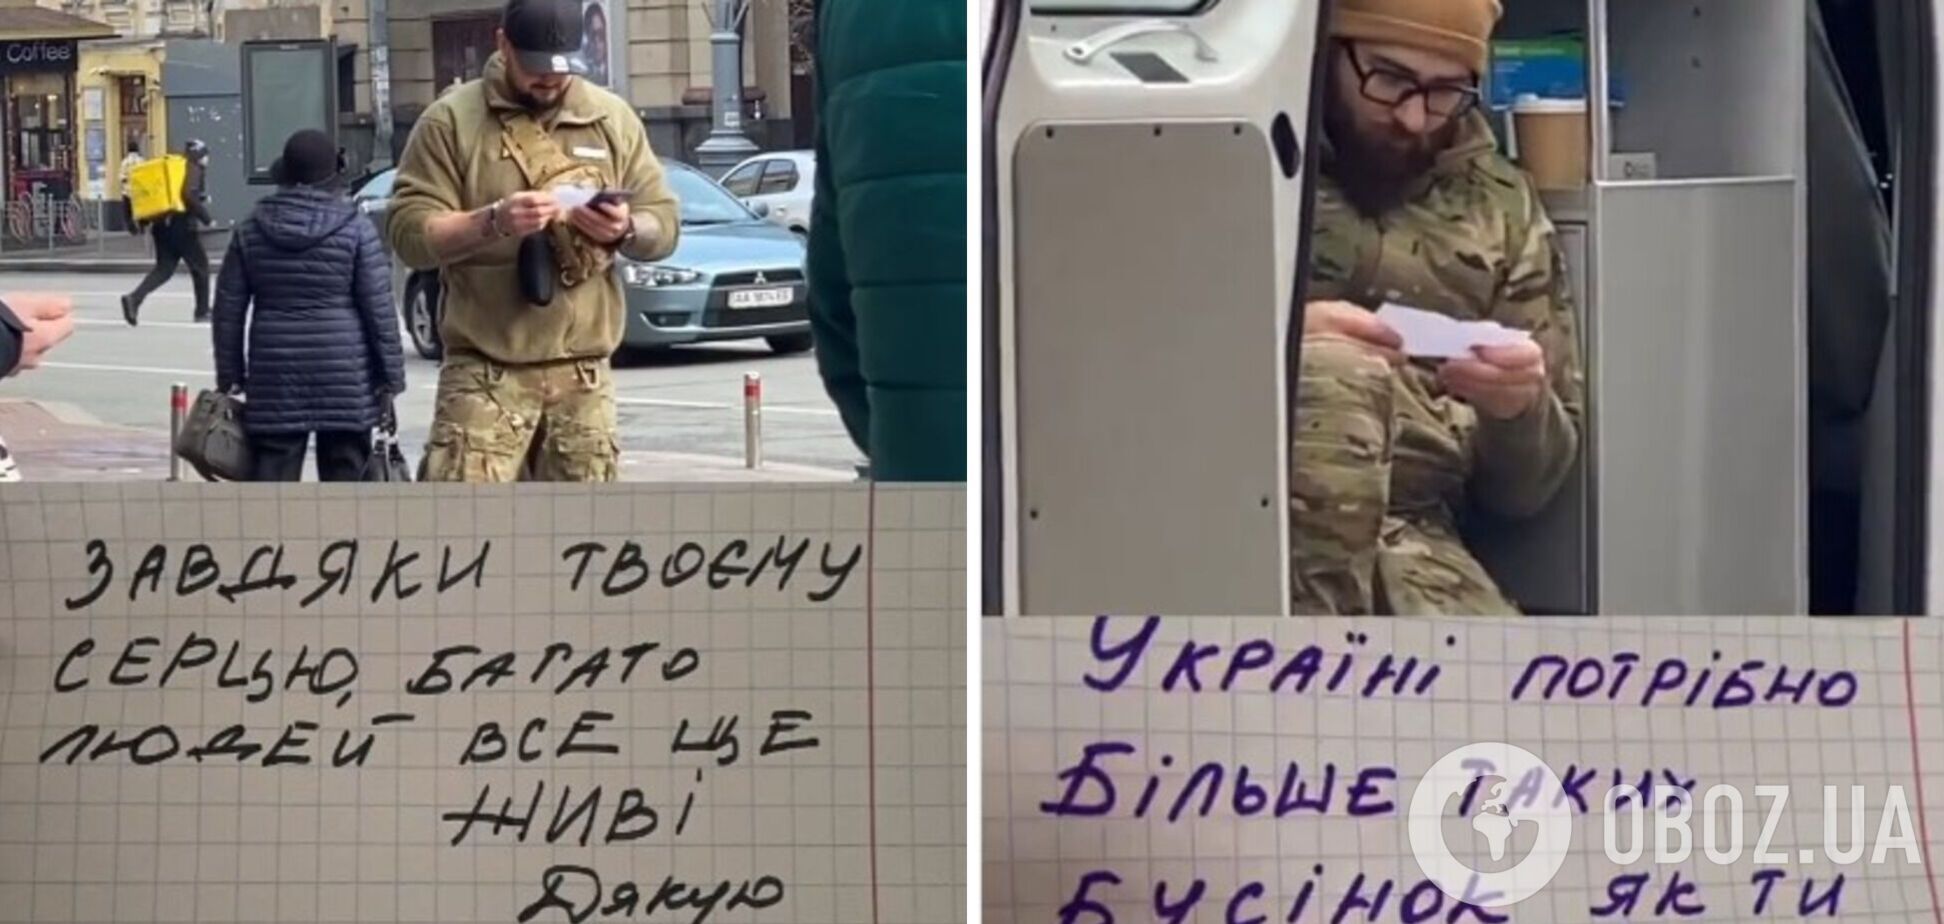 'Благодаря твоему сердцу многие все еще живы': украинскому военному передали трогательное послание. Видео